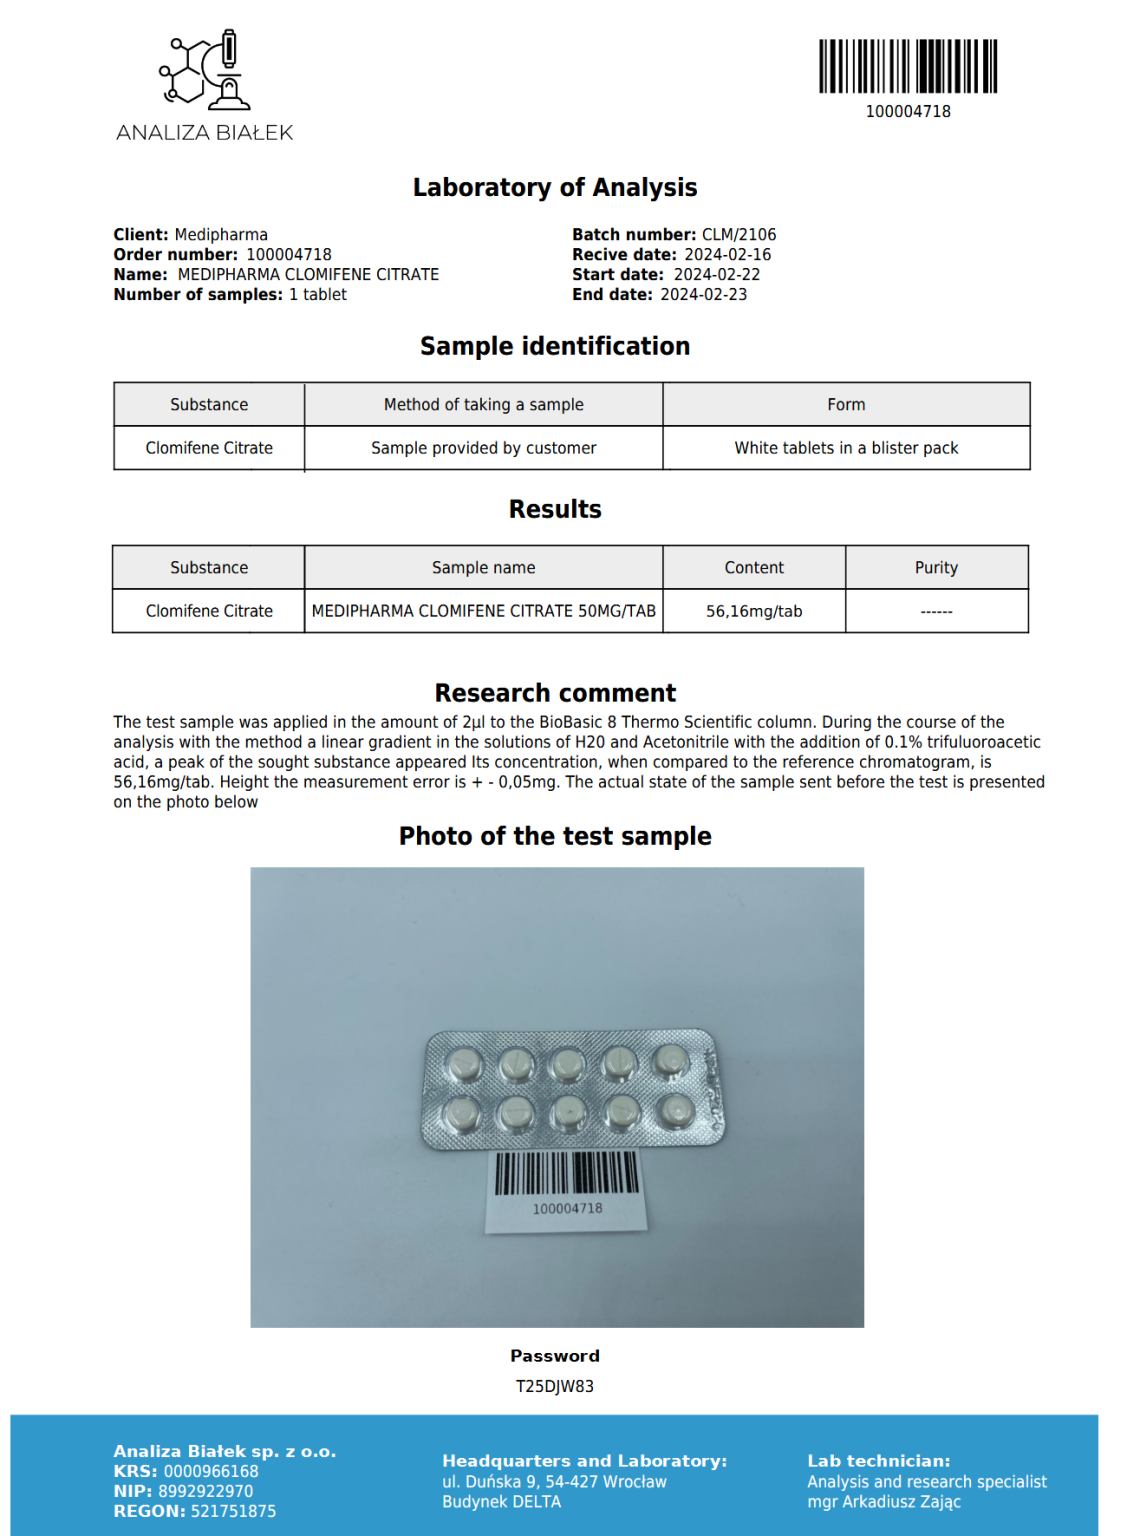 Medi Pharma Clomiphene (Clommed 50) 60tabs/50mg/tab